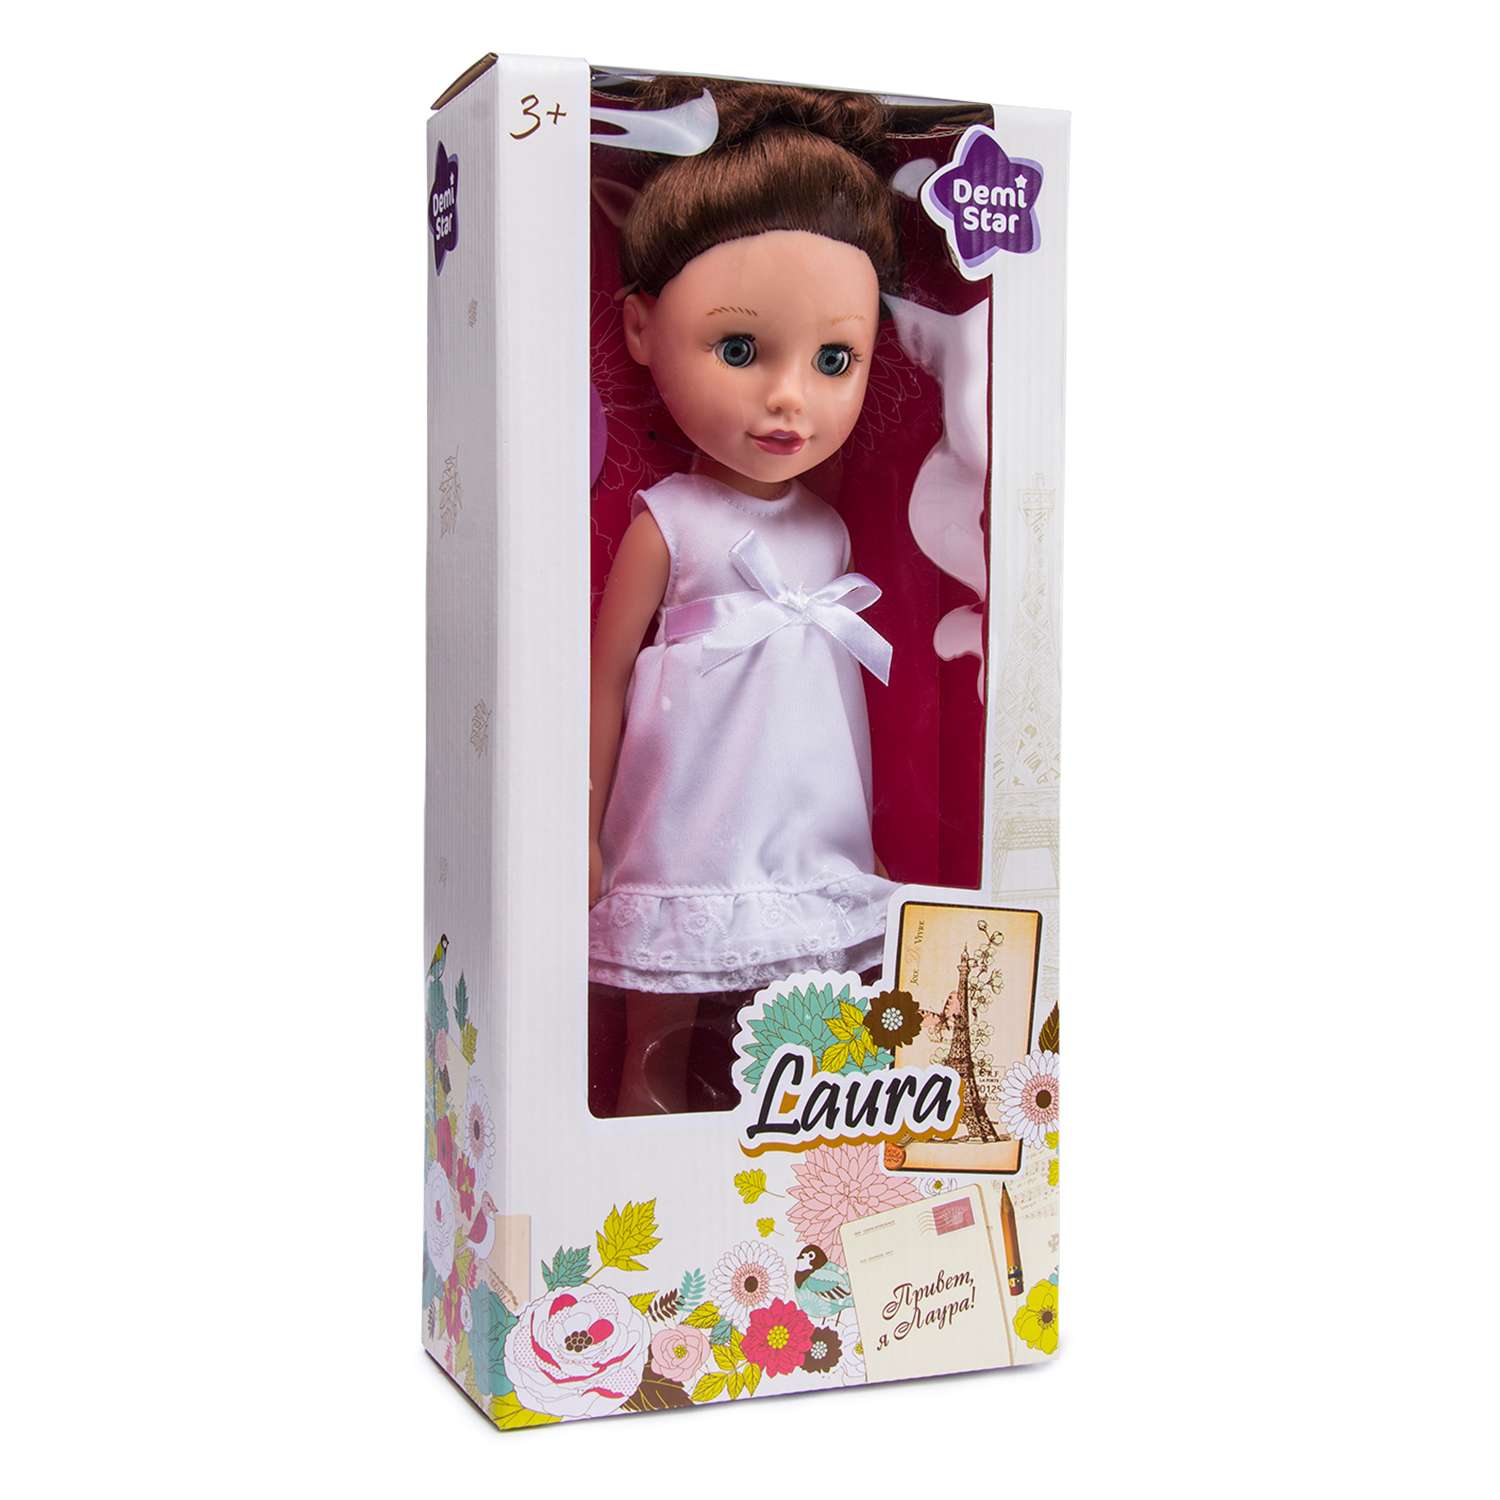 Кукла Demi Star Брюнетка 36 см 71411BL - фото 3